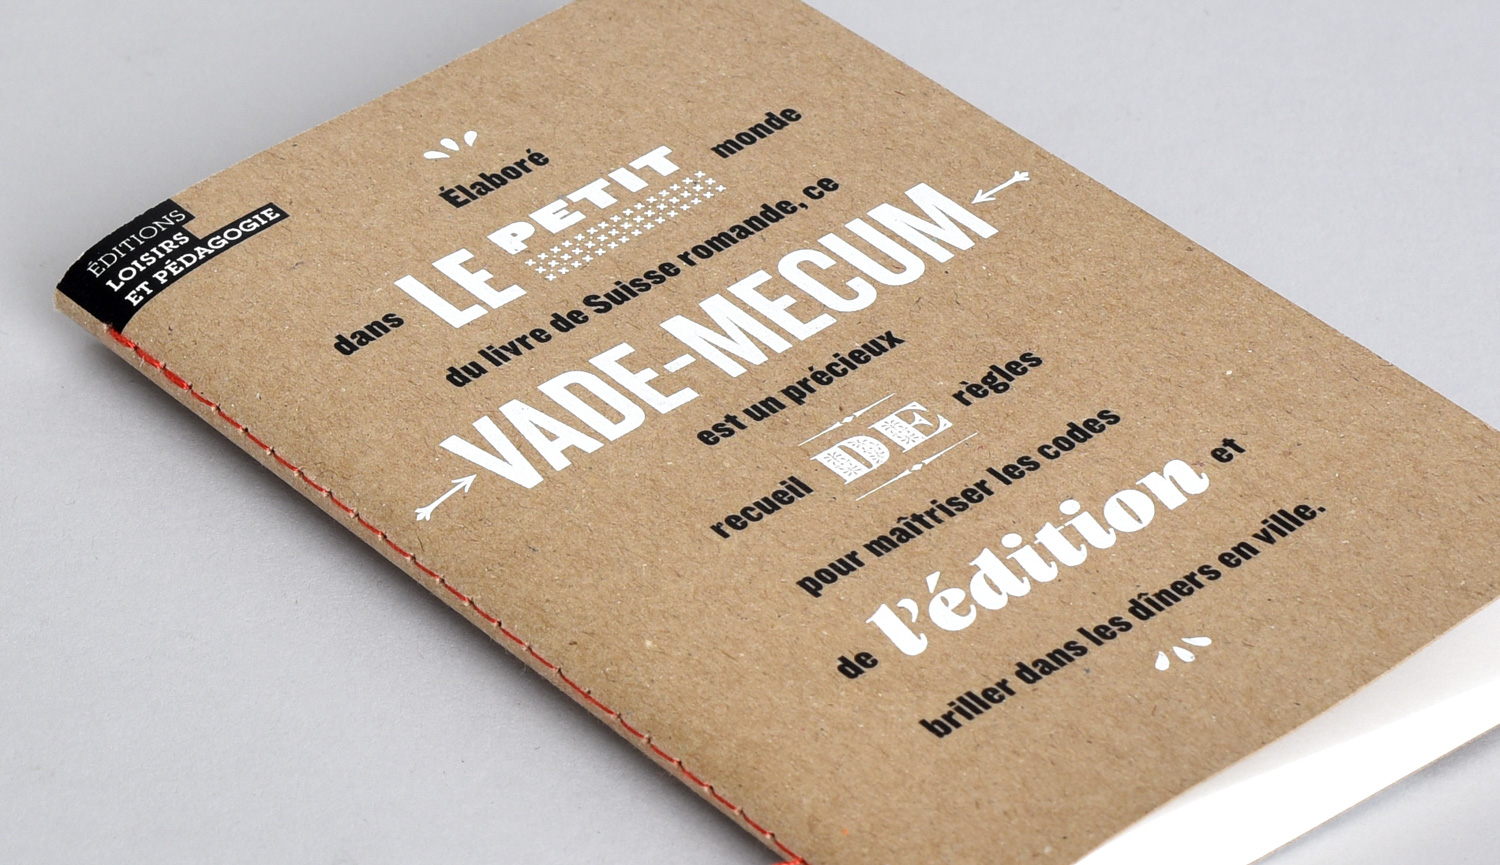 Première de couverture du Petit vade-mecum de l’édition